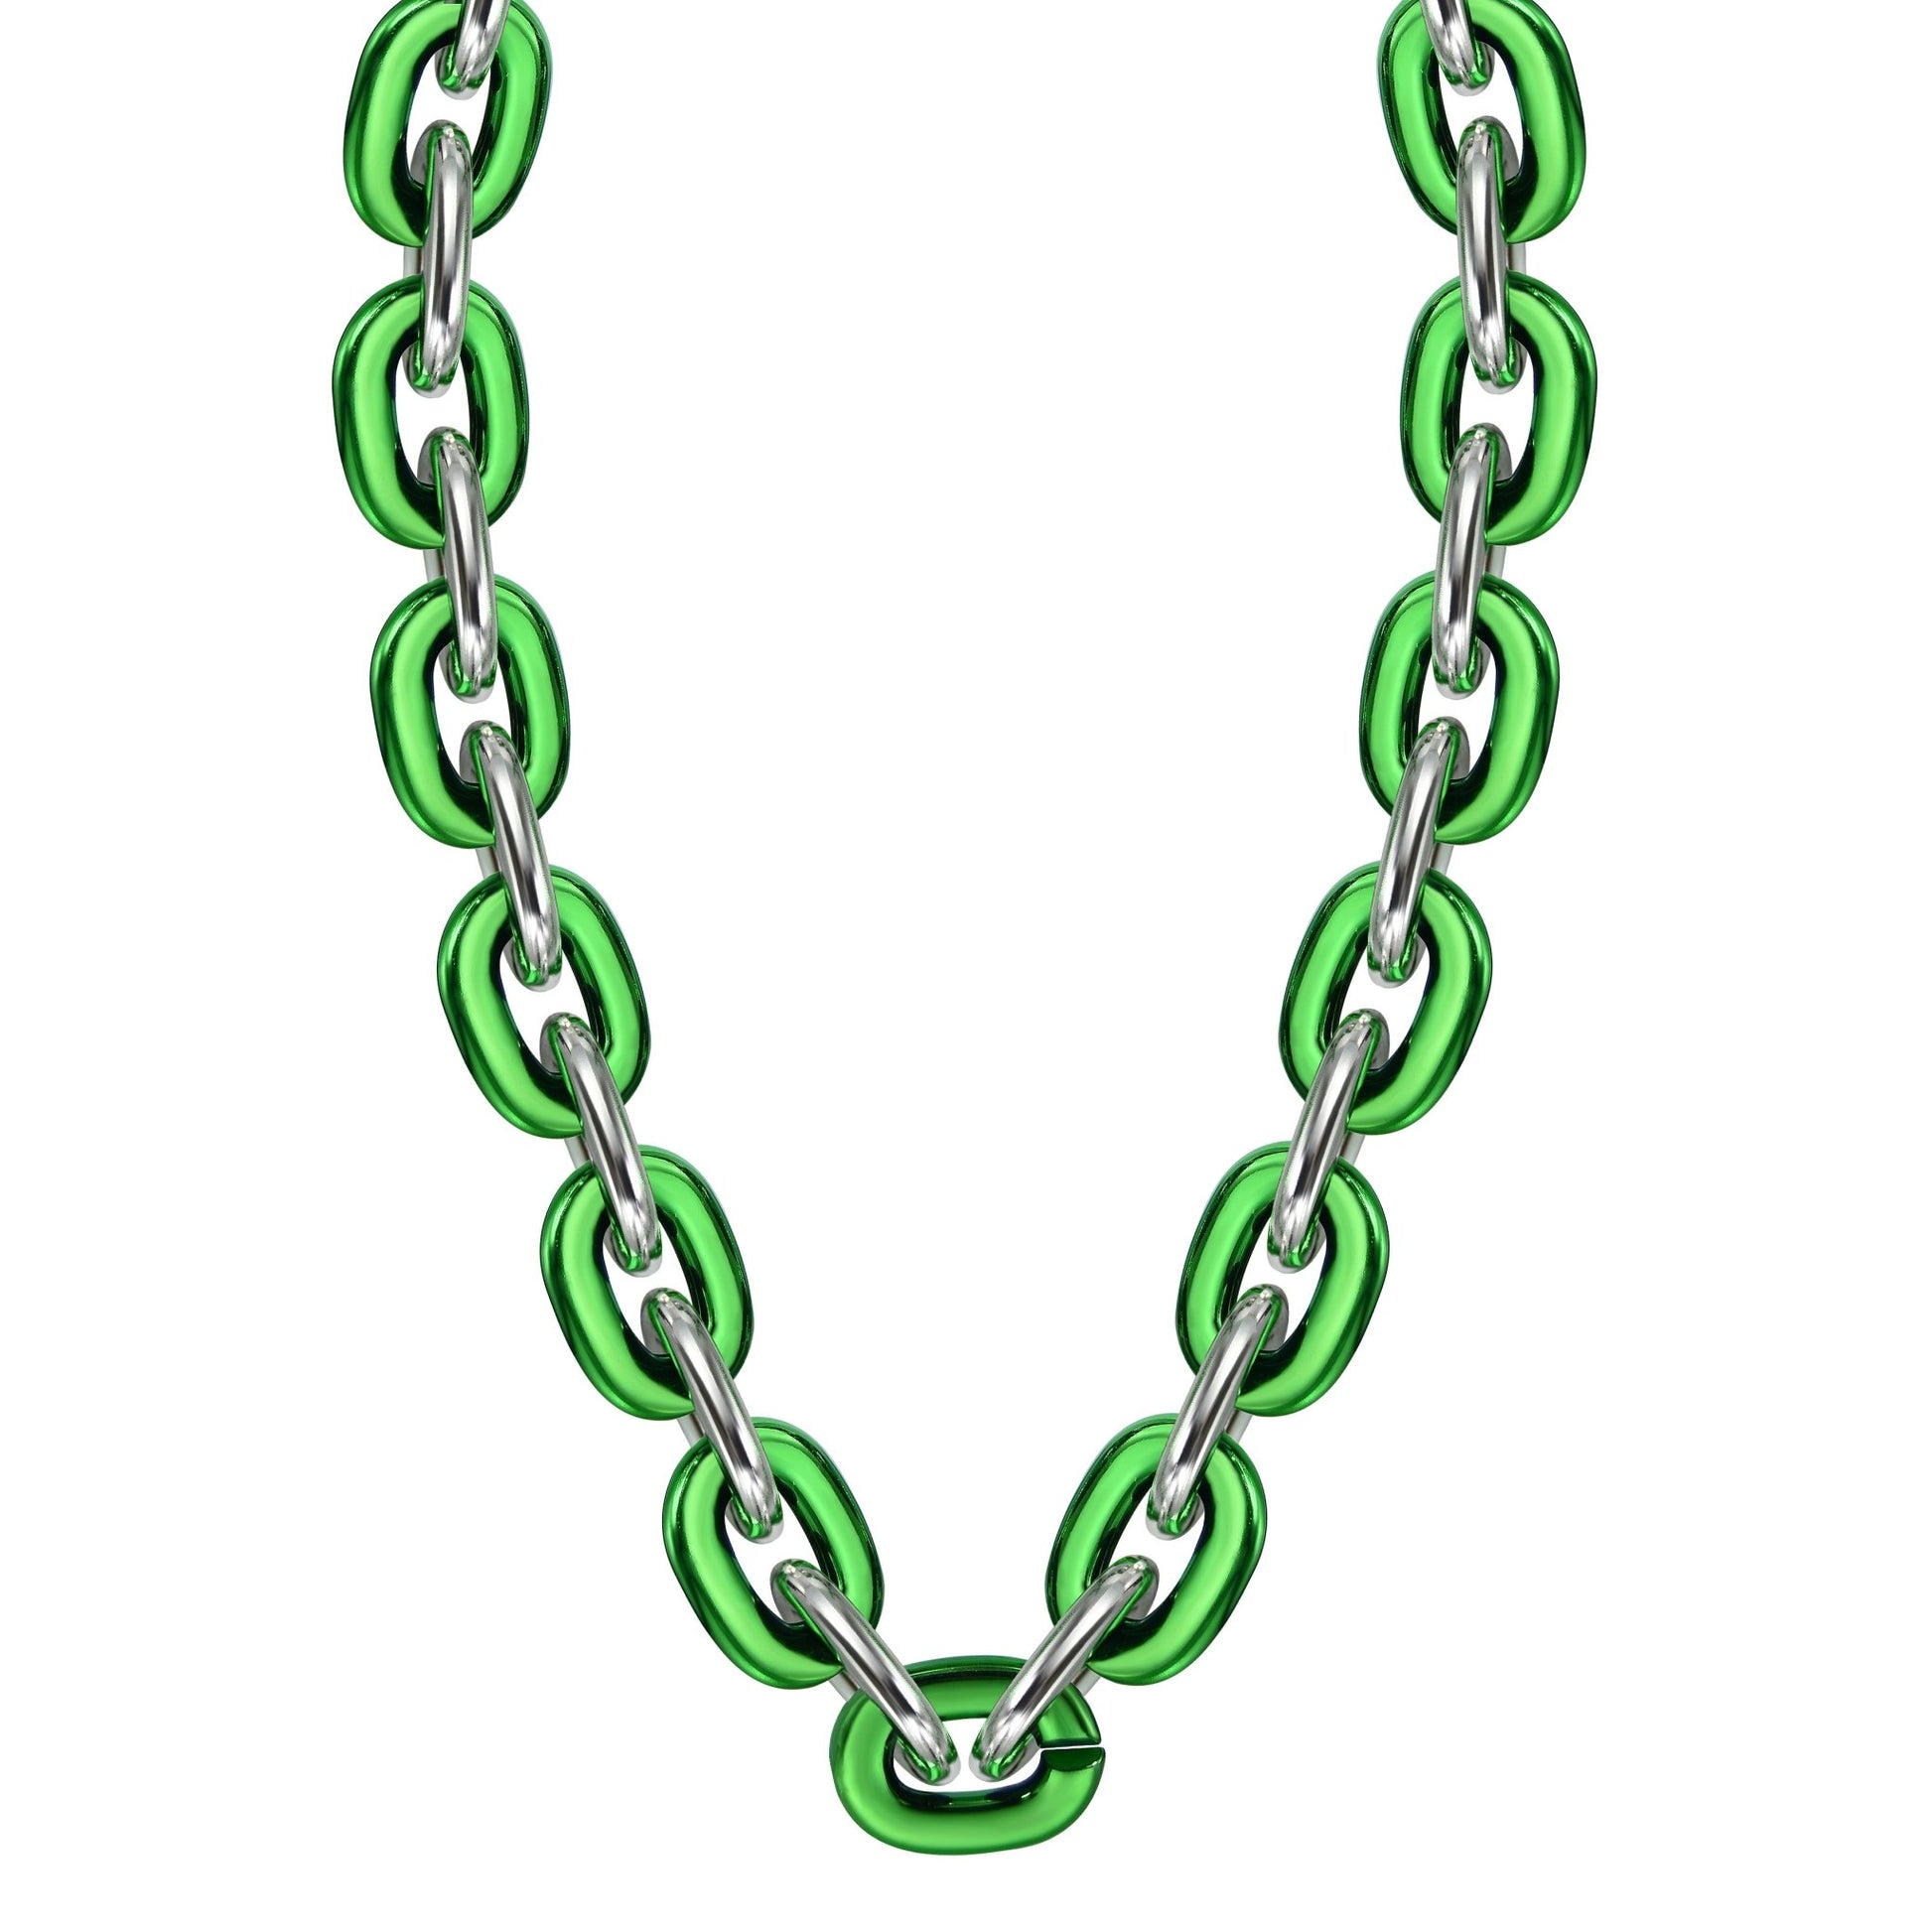 Jumbo Fan Chain Necklace - Gamedays Gear - Green / Silver